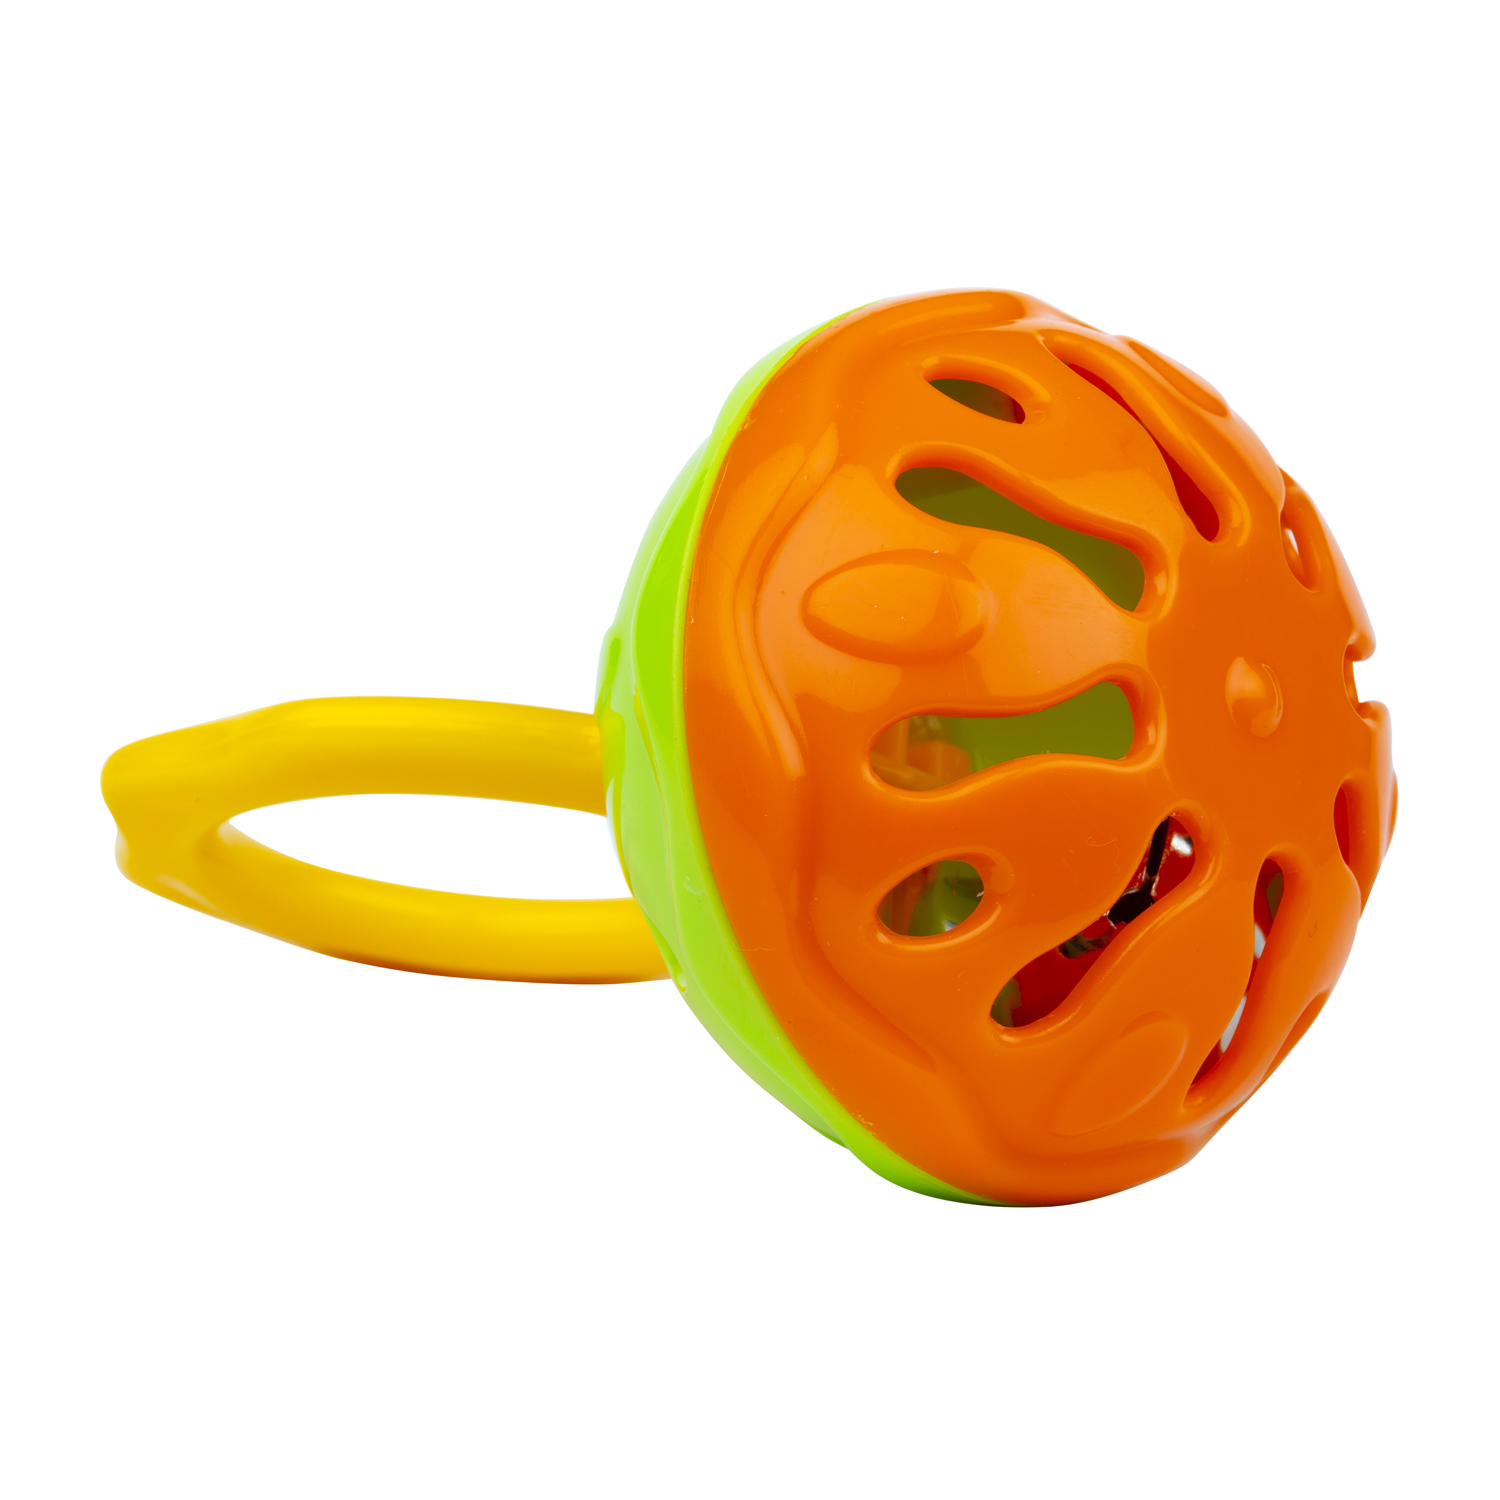 Погремушка Halilit пластмассовая с ручкой Мини-колокольчик оранжево-зеленый - фото 1